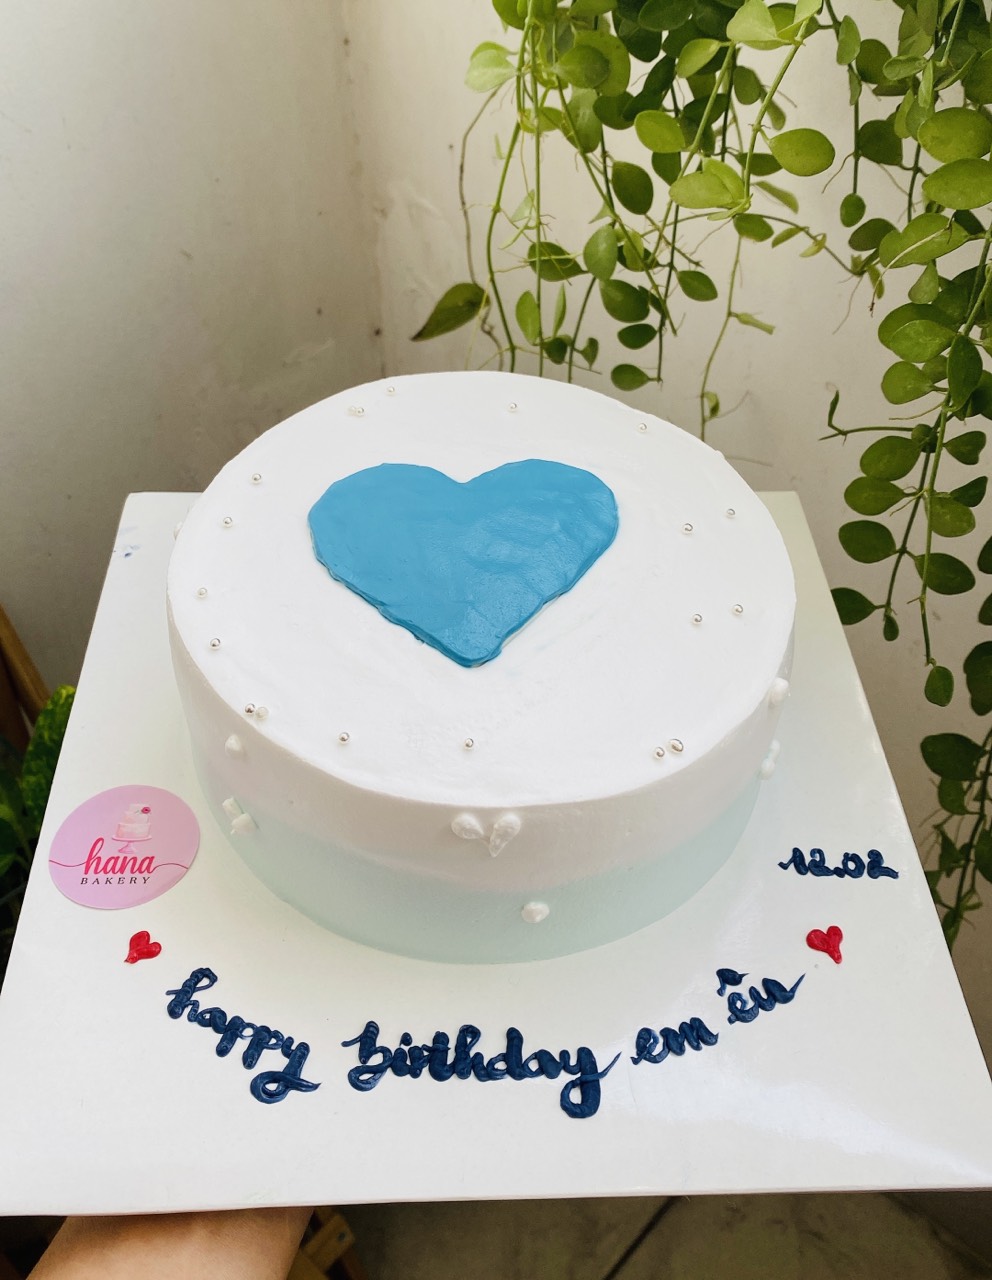 Bánh kem sinh nhật đơn giản A47 màu trắng xanh cực sang trọng cho nam   TIEMBANHQUYNH  Quỳnh Bakery